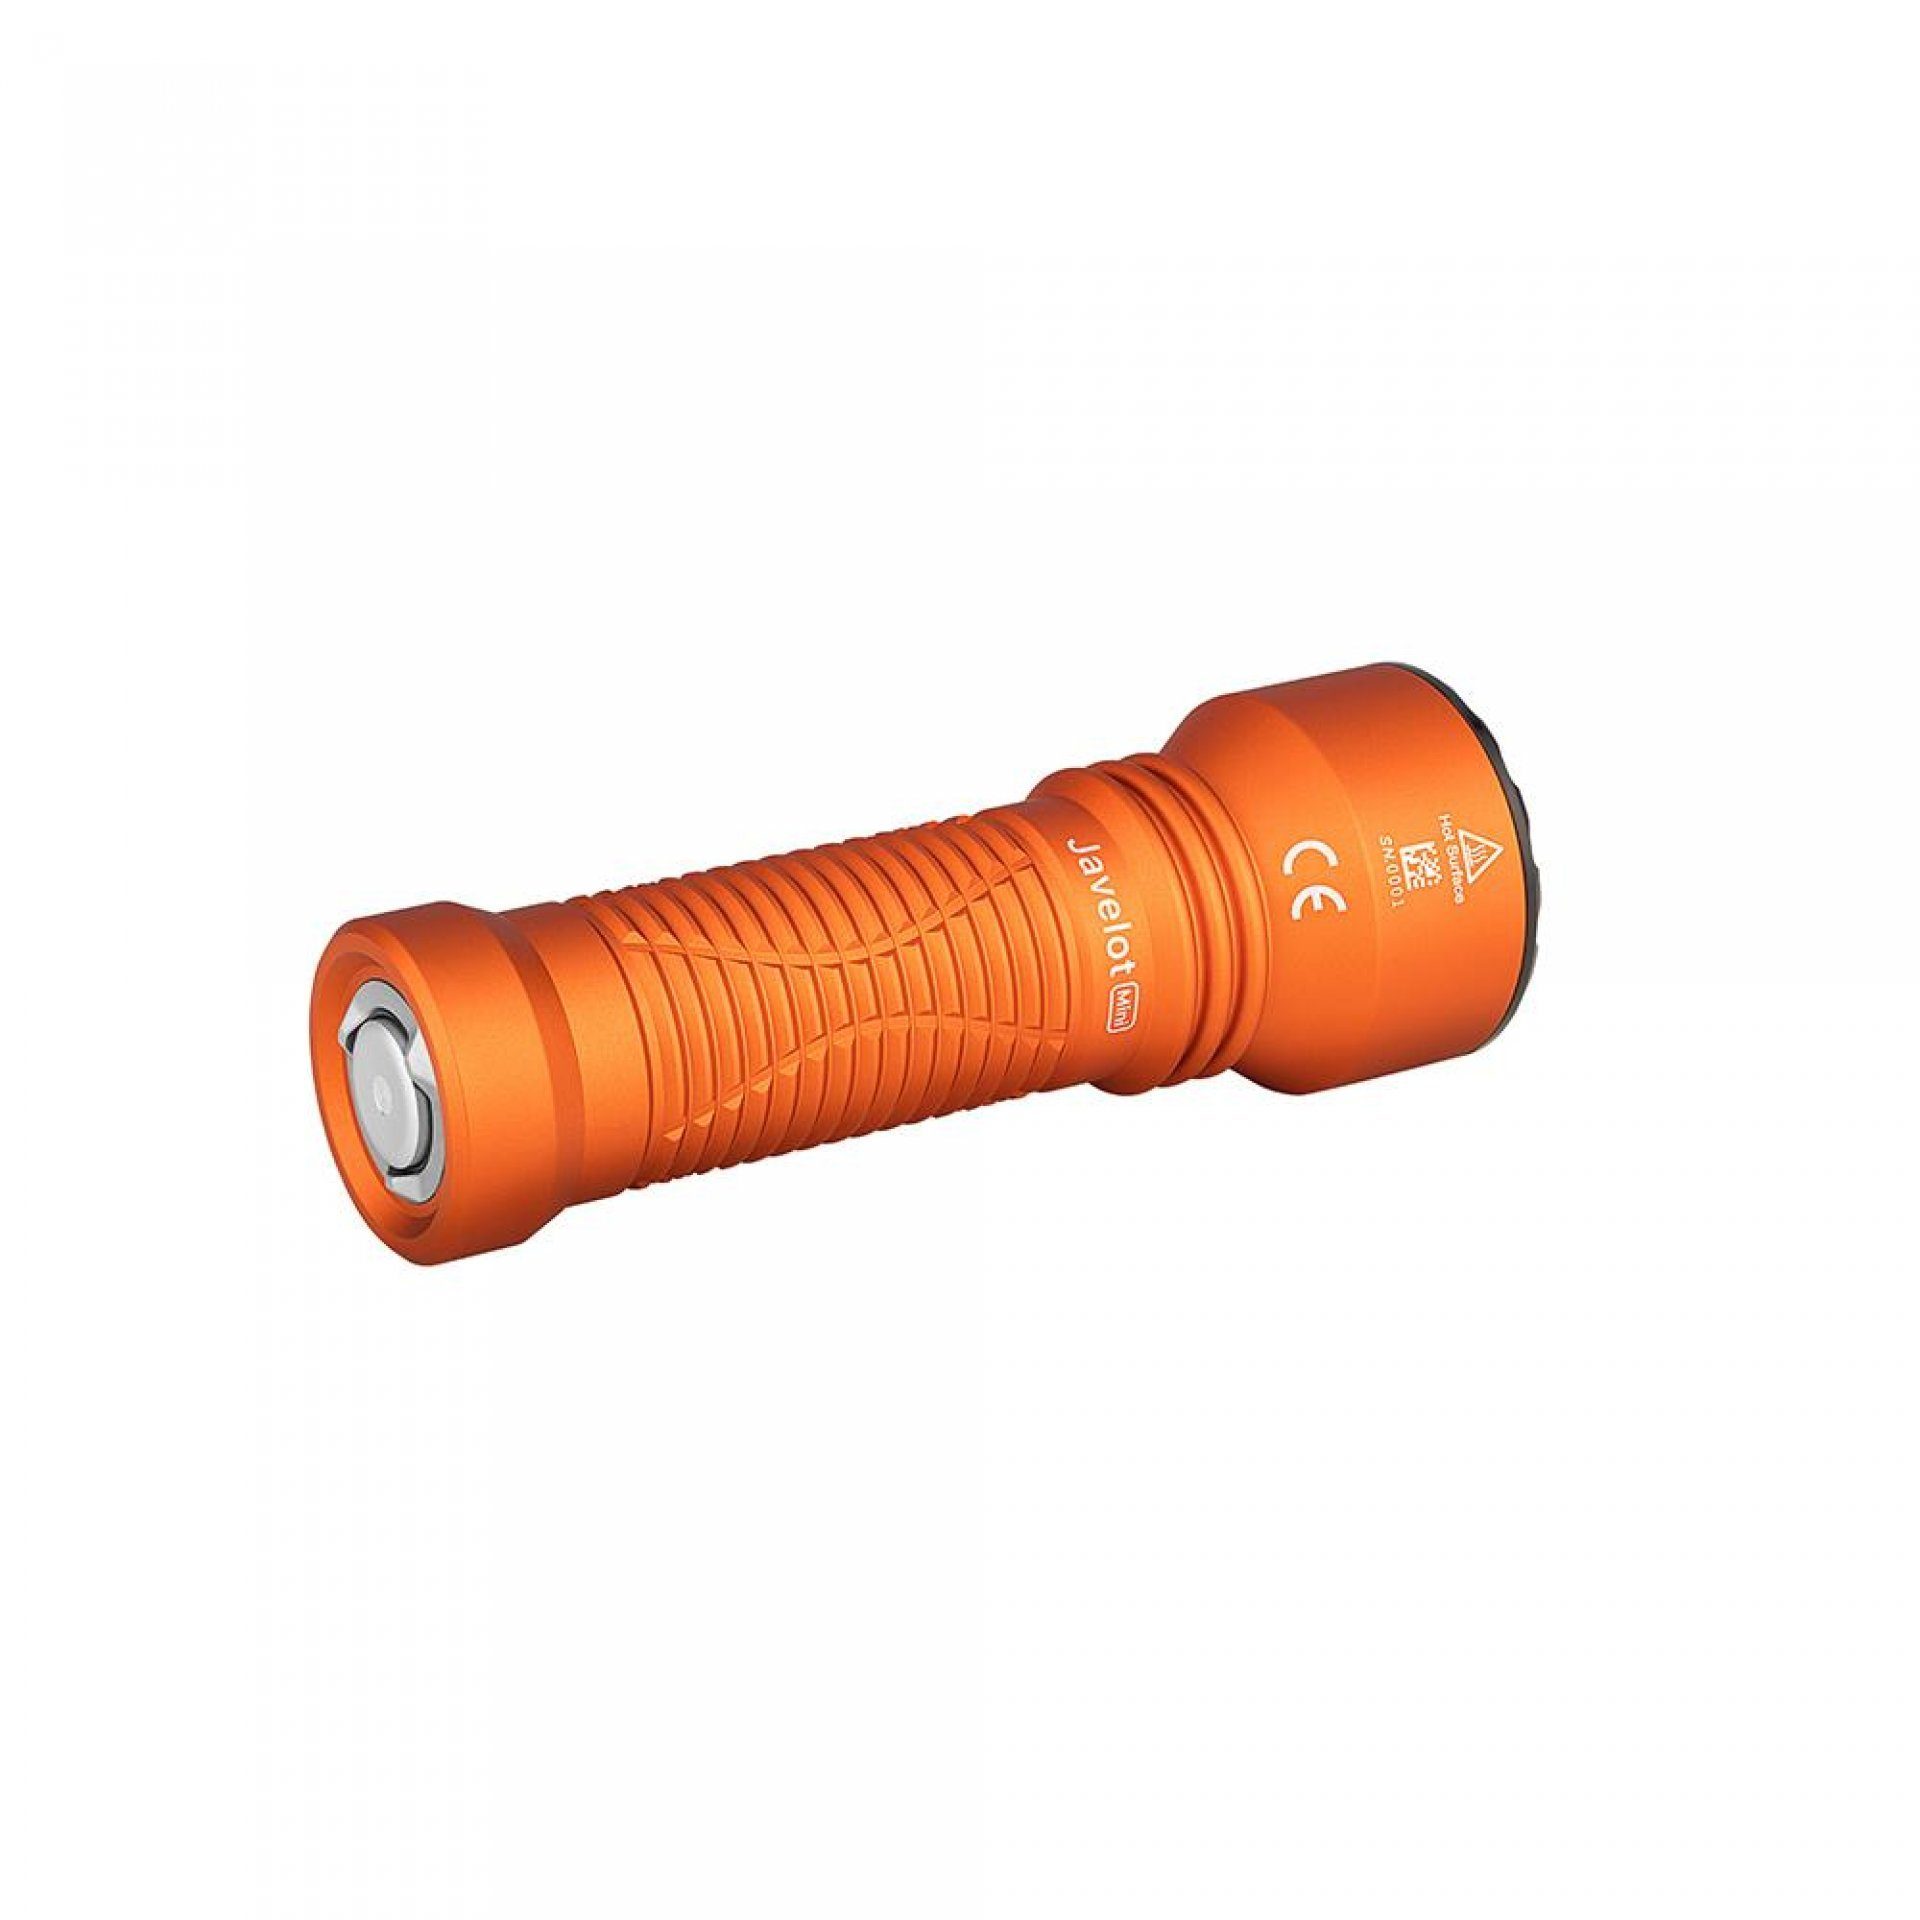 Patrouille, Taschenlampe Javelot wiederaufbare Notfall, einer LED Taschenlampe runden für Mini OLIGHT IPX8 mit Orange LED Camping taktische zoombare Lichtquelle, Handlampe